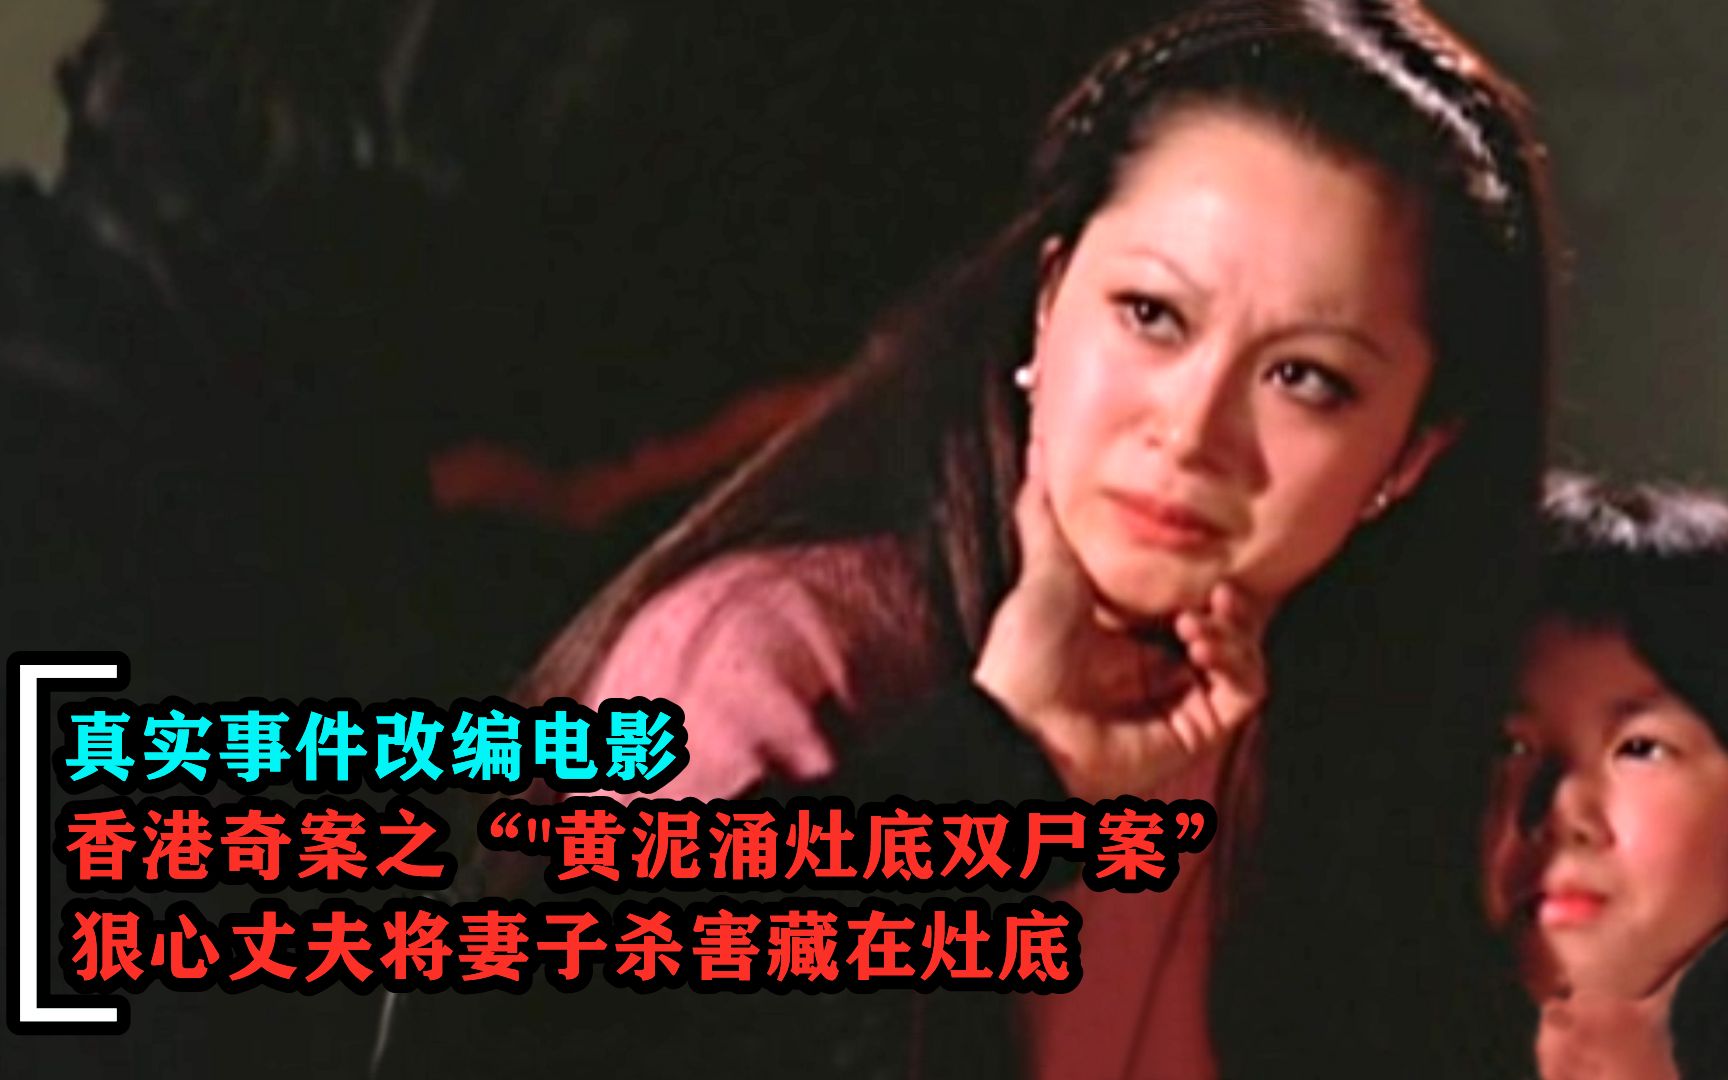 香港十大奇案改编，变态律师实施完美入室强奸案 - 哔哩哔哩